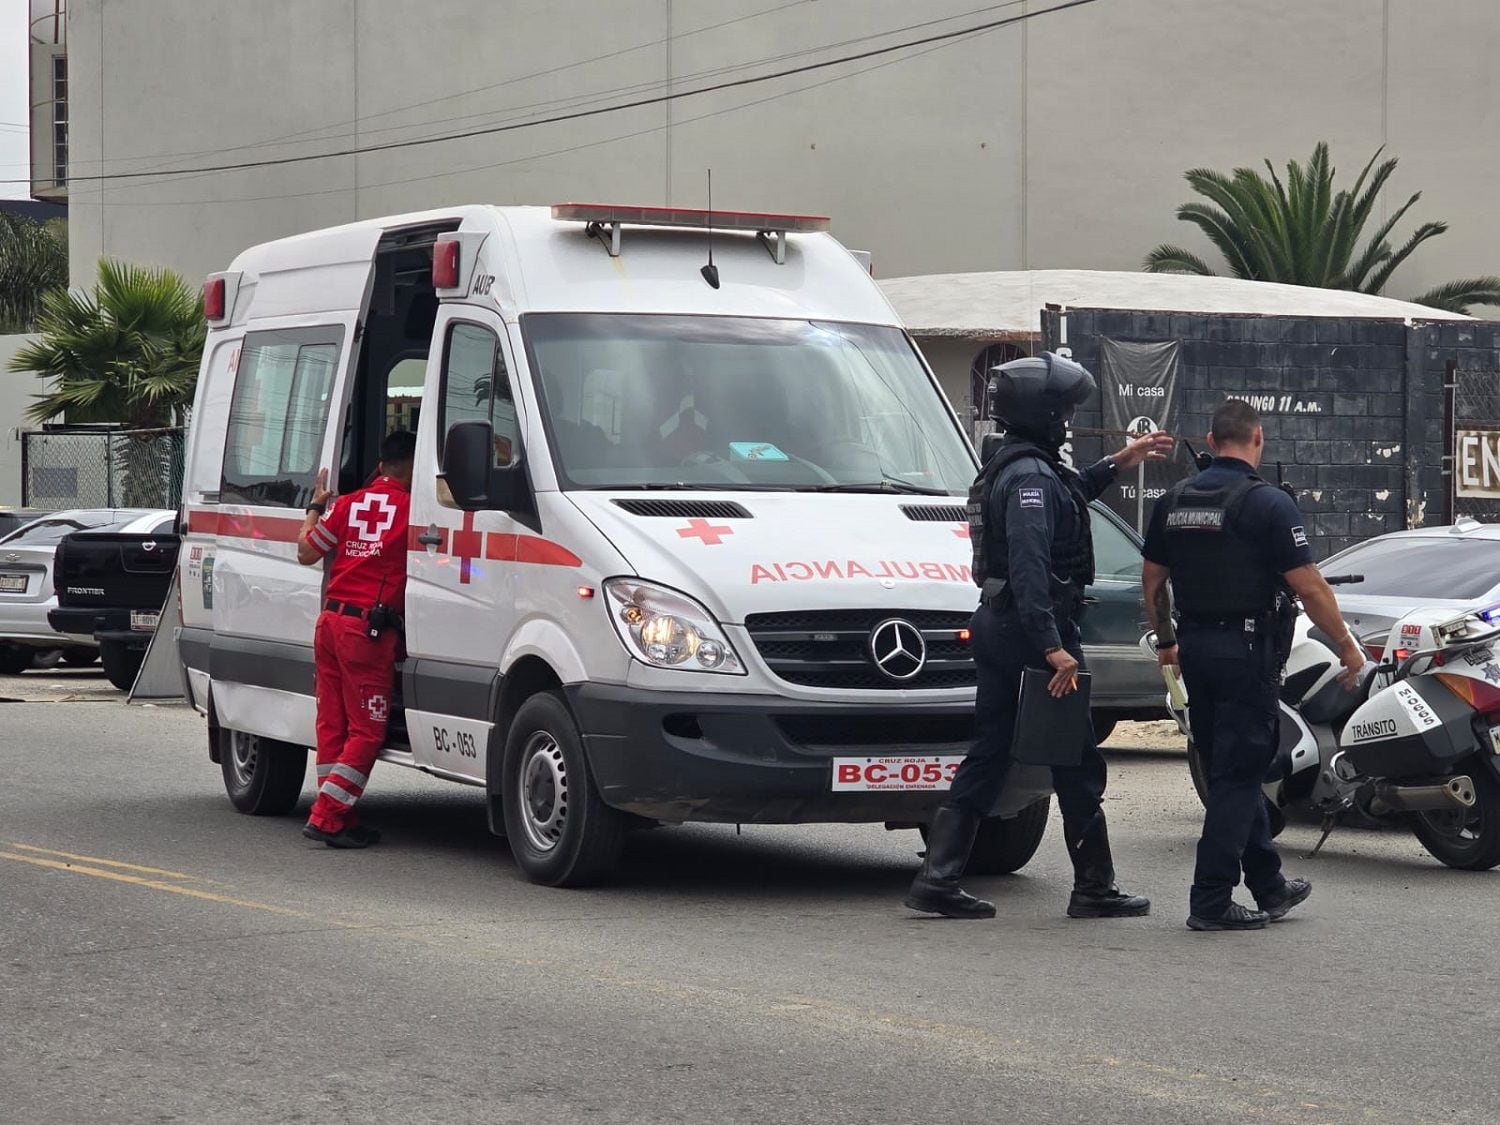 La mujer lesionado fue trasladada en ambulancia de la Cruz Roja a un hospital para su atención médica.